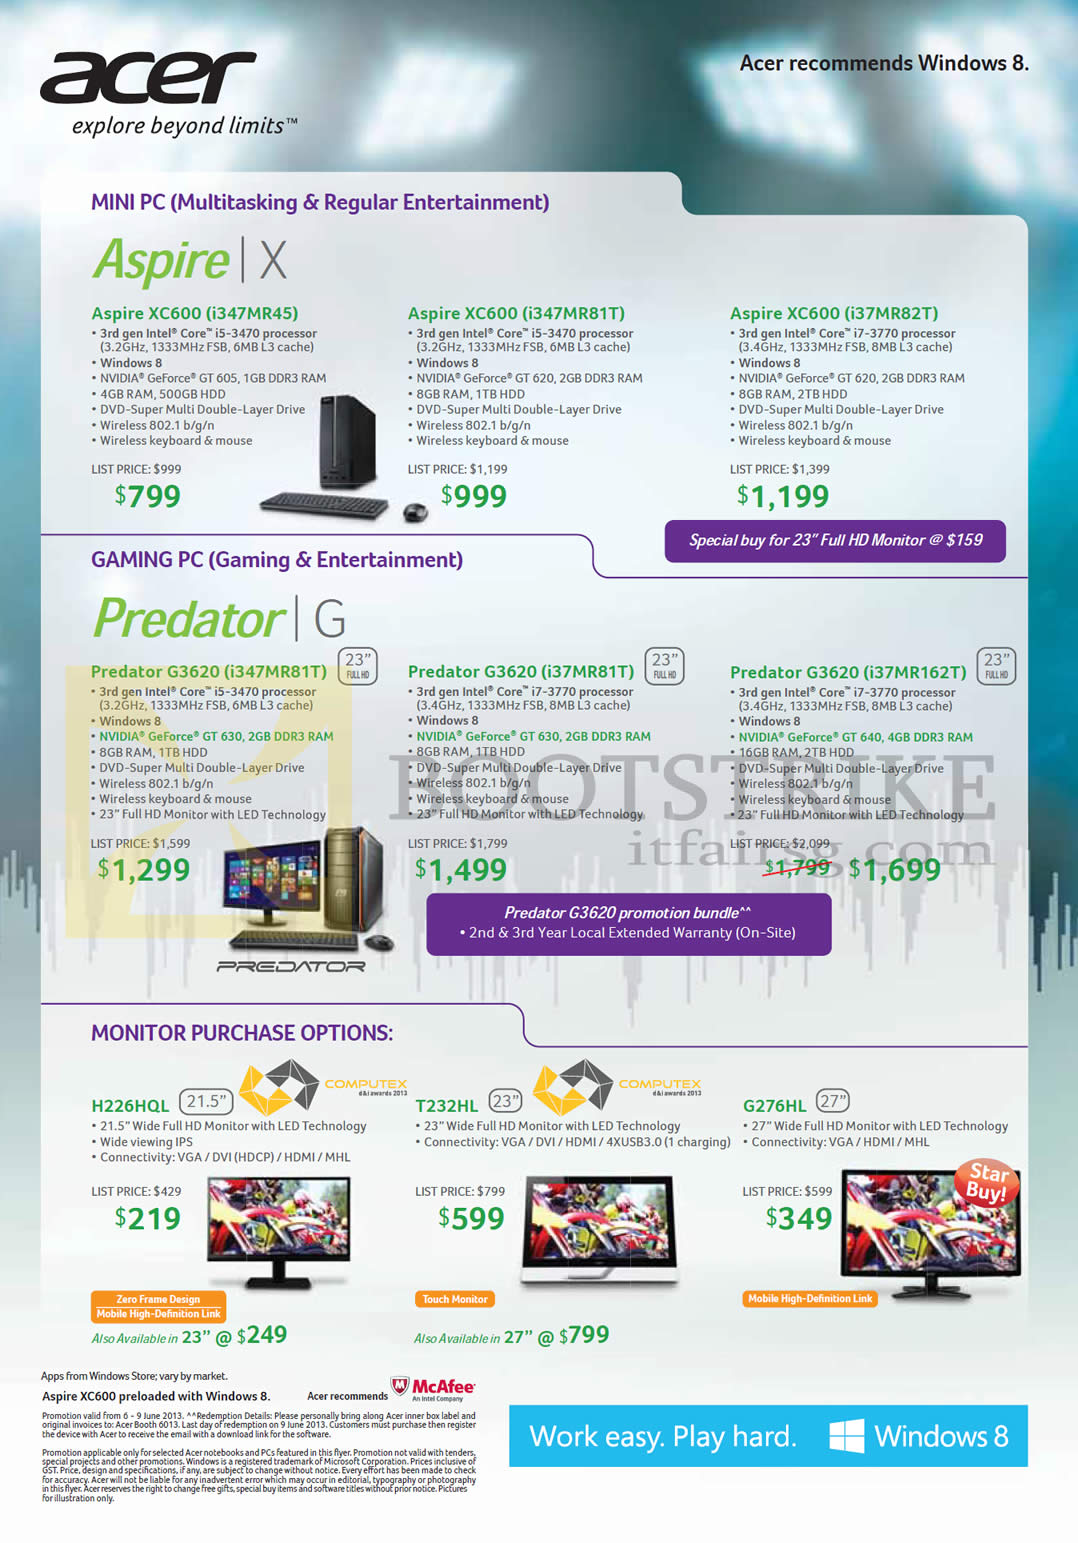 PC SHOW 2013 price list image brochure of Acer Desktop PCs, Monitors, Aspire XC600, G3620, H226HQL, T232HL, G276HL